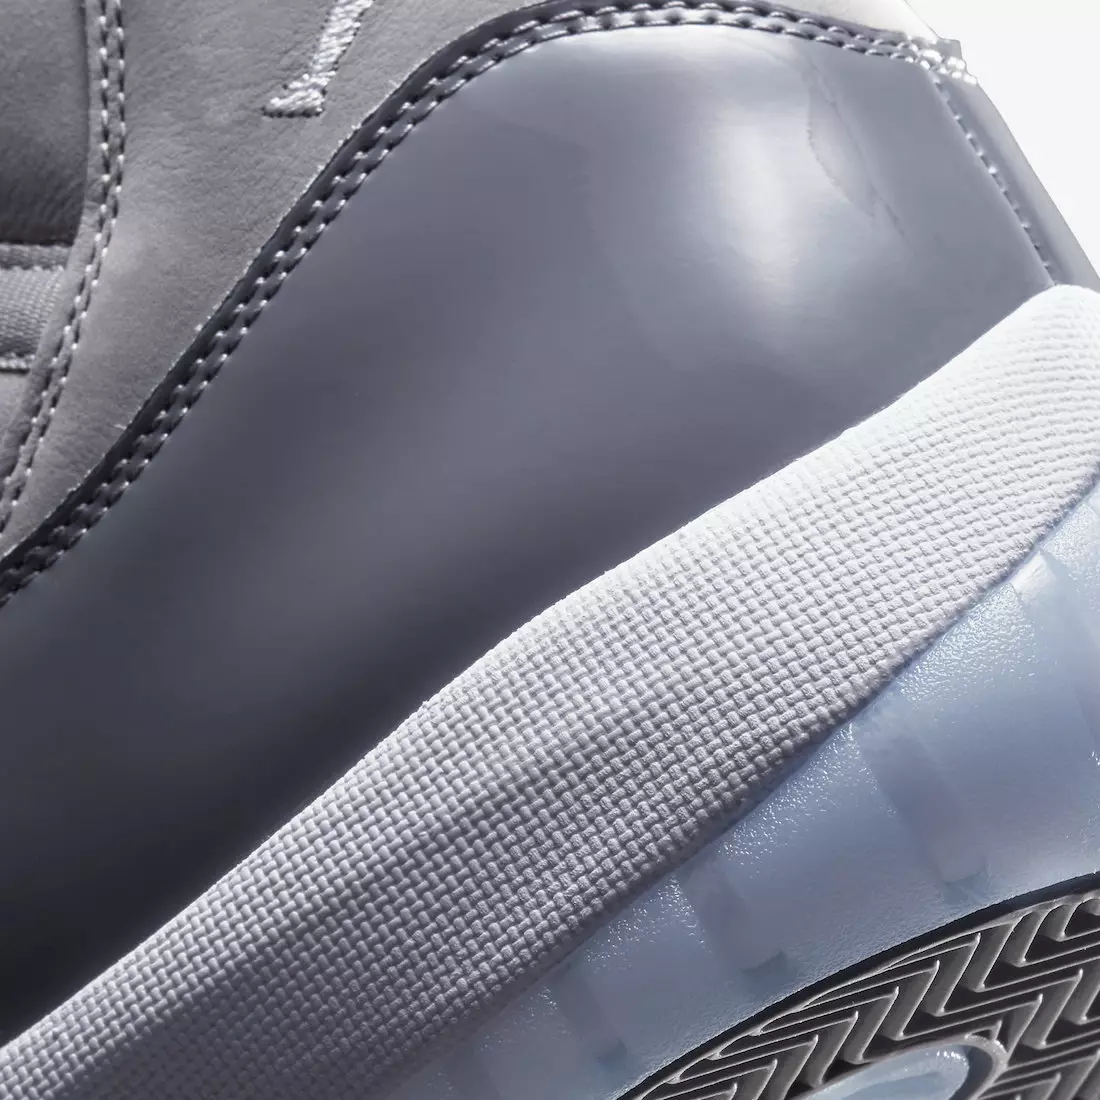 Ngày phát hành Air Jordan 11 Cool Grey 2021 CT8012-005